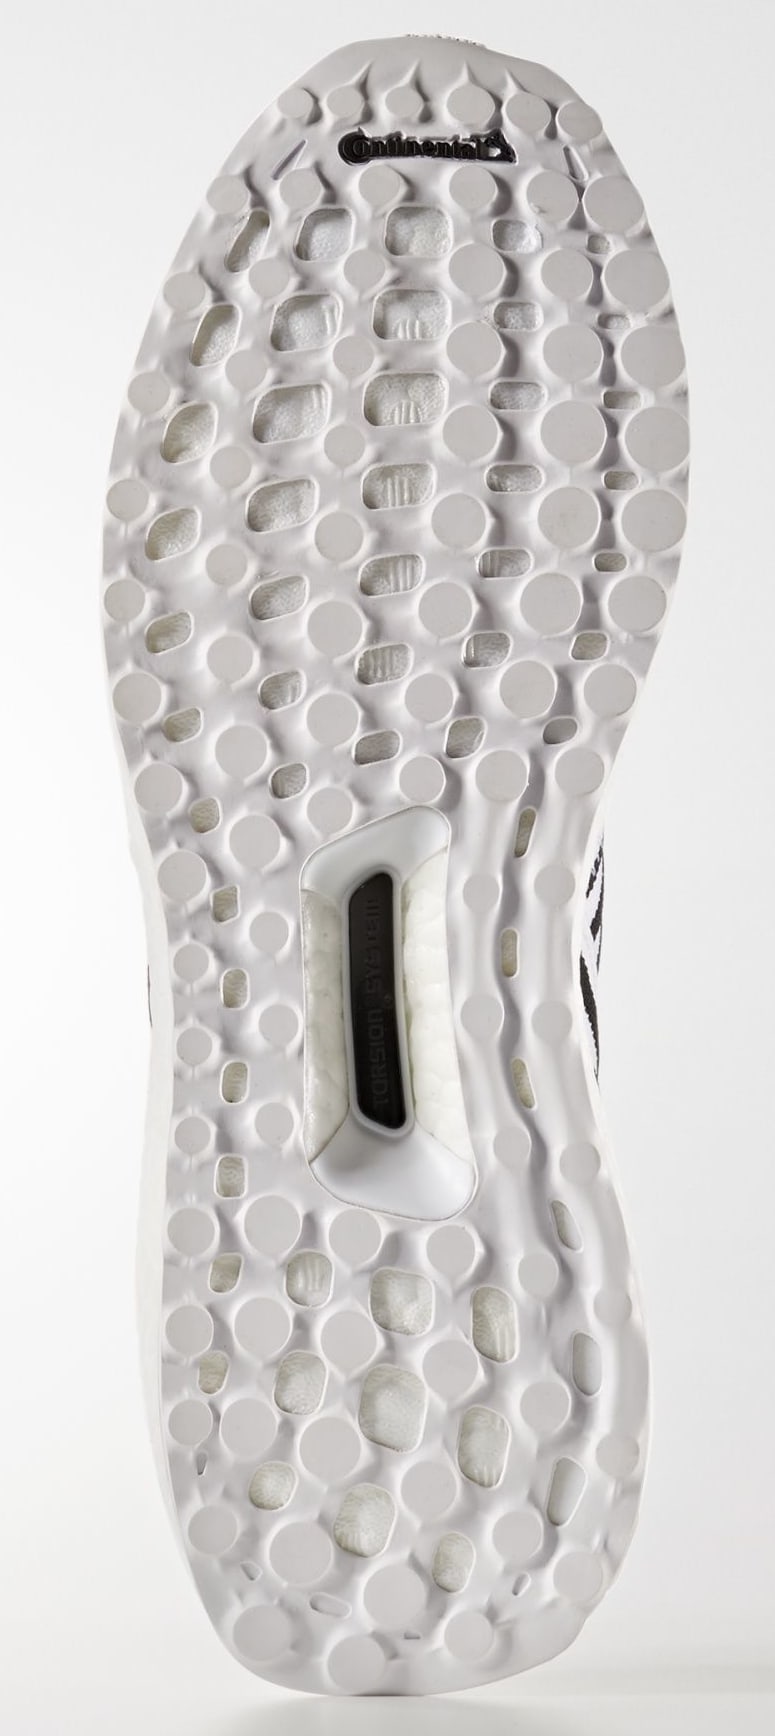 Adidas Nemeziz Tango 17+ 360 Agility &#x27;Running White/Running White/Core Black&#x27; CG3656 (Bottom)